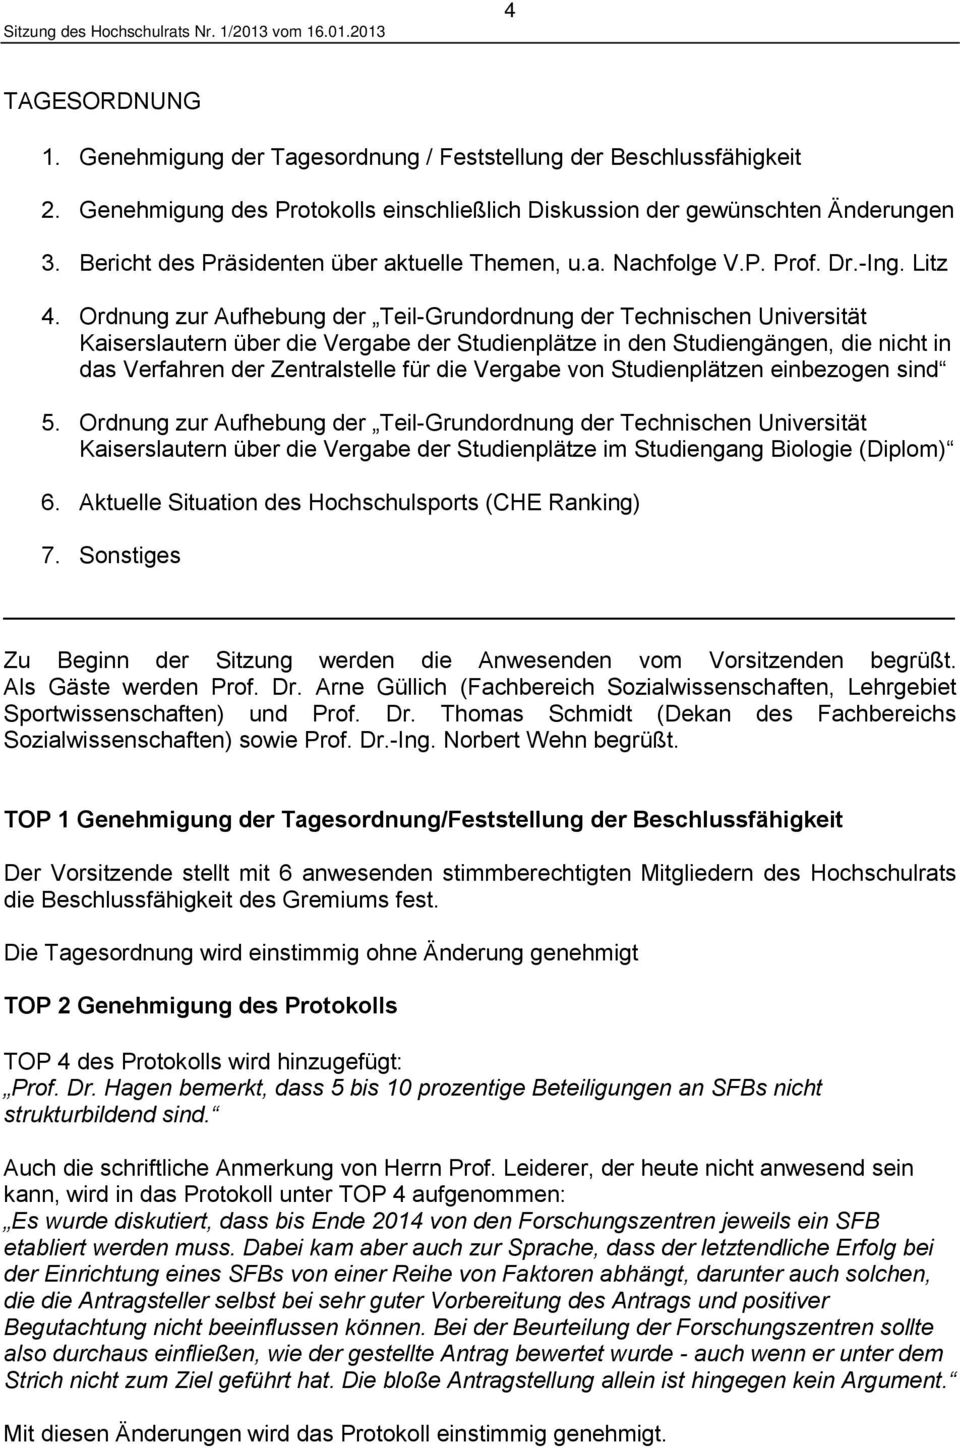 Ordnung zur Aufhebung der Teil-Grundordnung der Technischen Universität Kaiserslautern über die Vergabe der Studienplätze in den Studiengängen, die nicht in das Verfahren der Zentralstelle für die